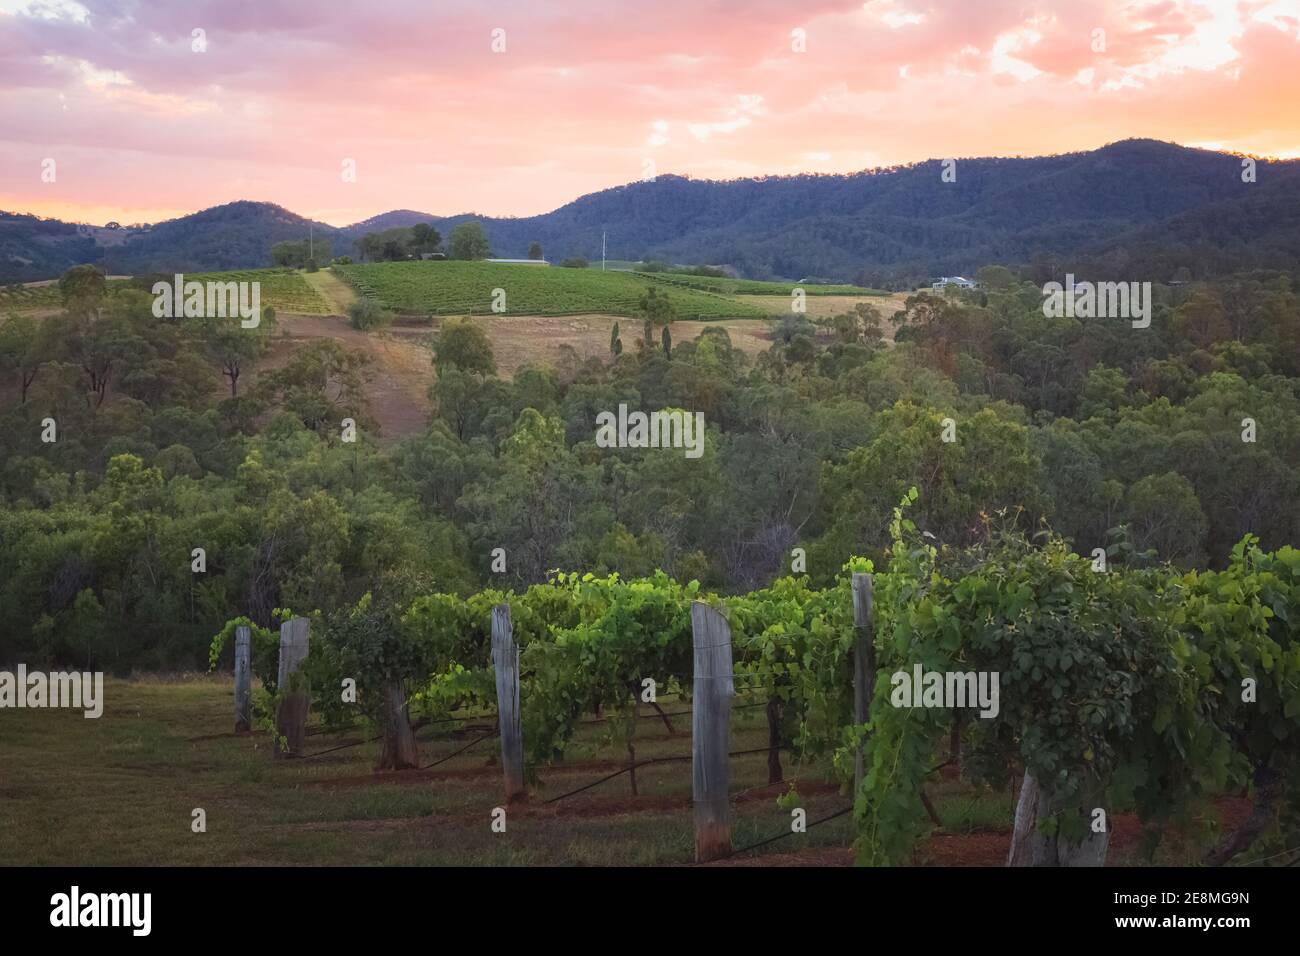 Un coucher de soleil coloré au-dessus d'un paysage rural pittoresque et d'un vignoble dans la région de Hunter Valley, célèbre pays viticole de Nouvelle-Galles du Sud, en Australie. Banque D'Images